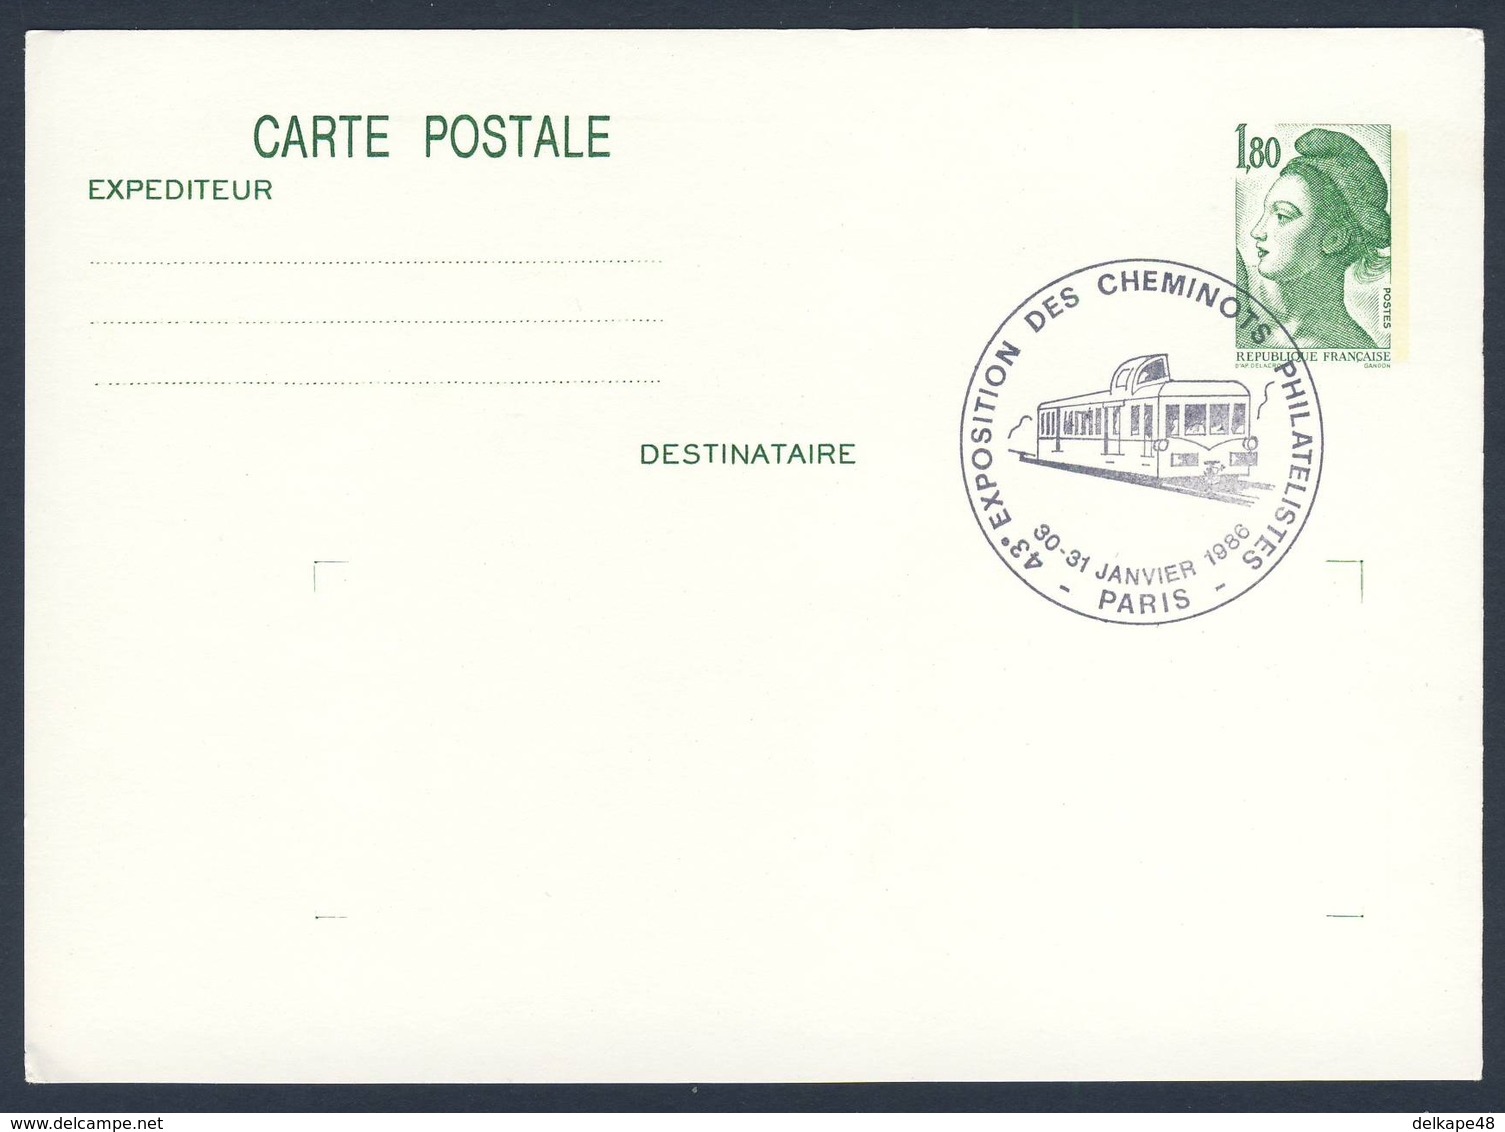 France Rep. Française 1986 Card / Karte / Carte - 43. Exp. Cheminots Philatelistes 1986, Paris / Ausstellung - Treinen